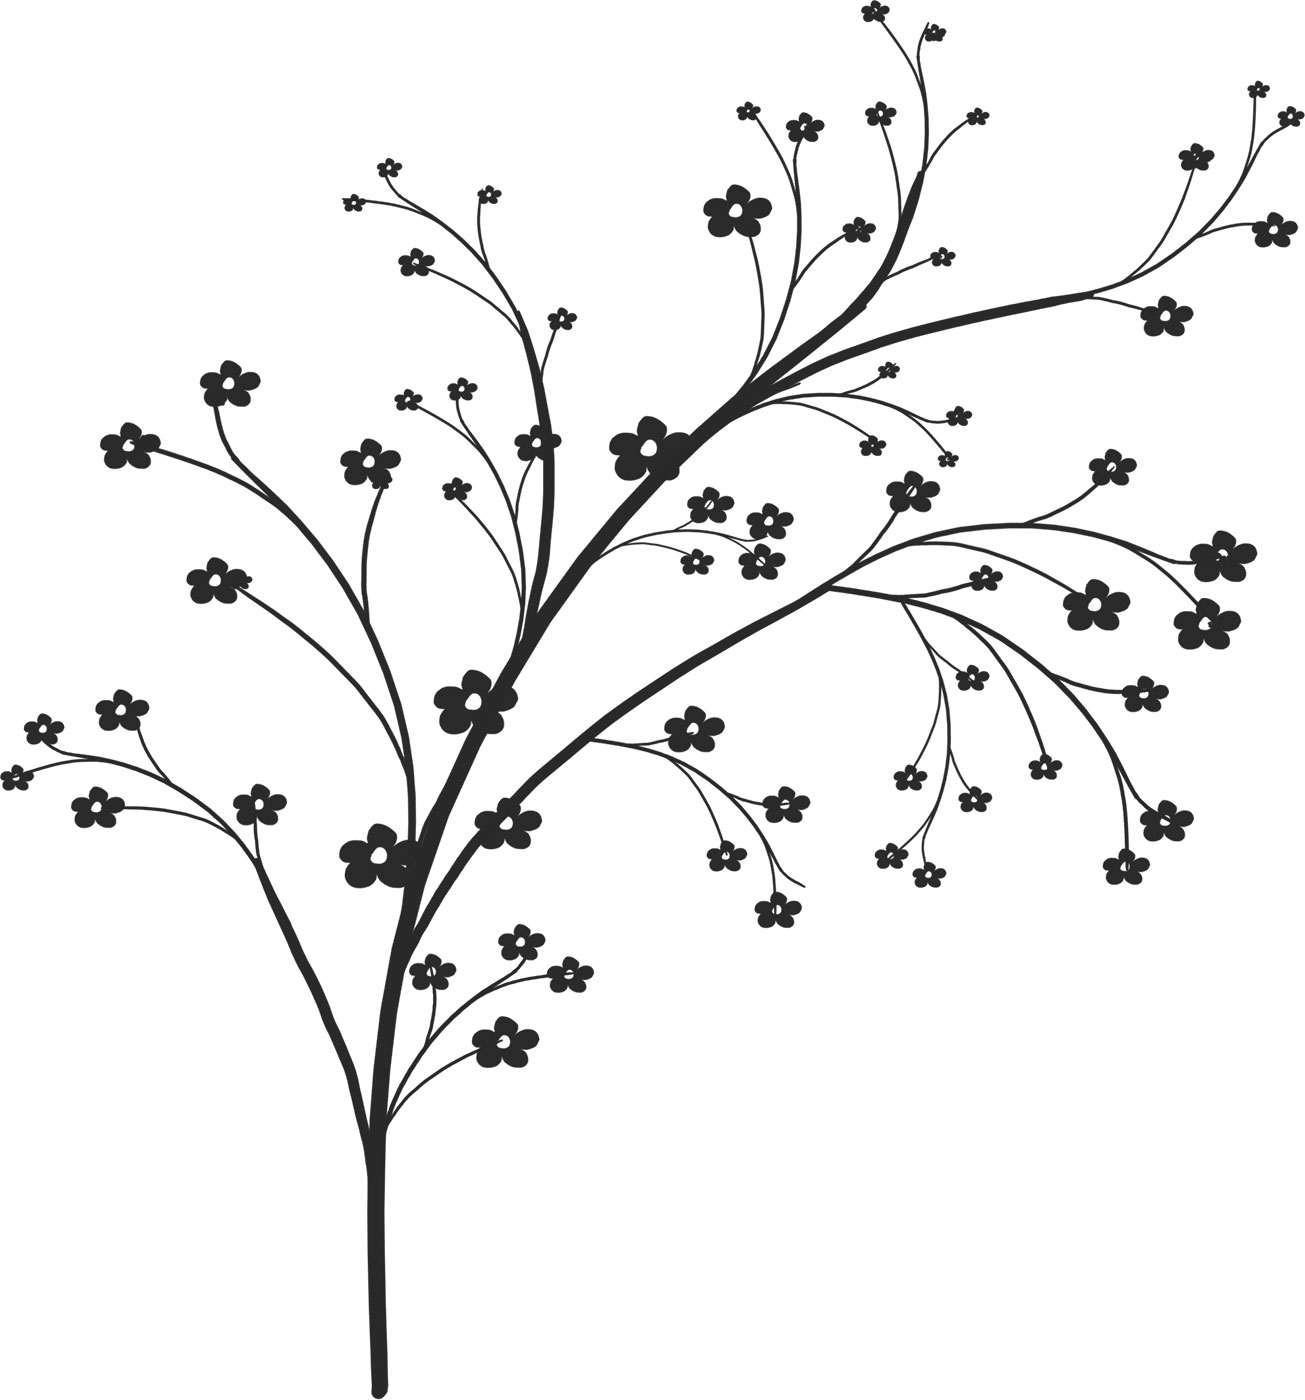 ポップでかわいい花のイラスト フリー素材 No 1426 白黒 木枝